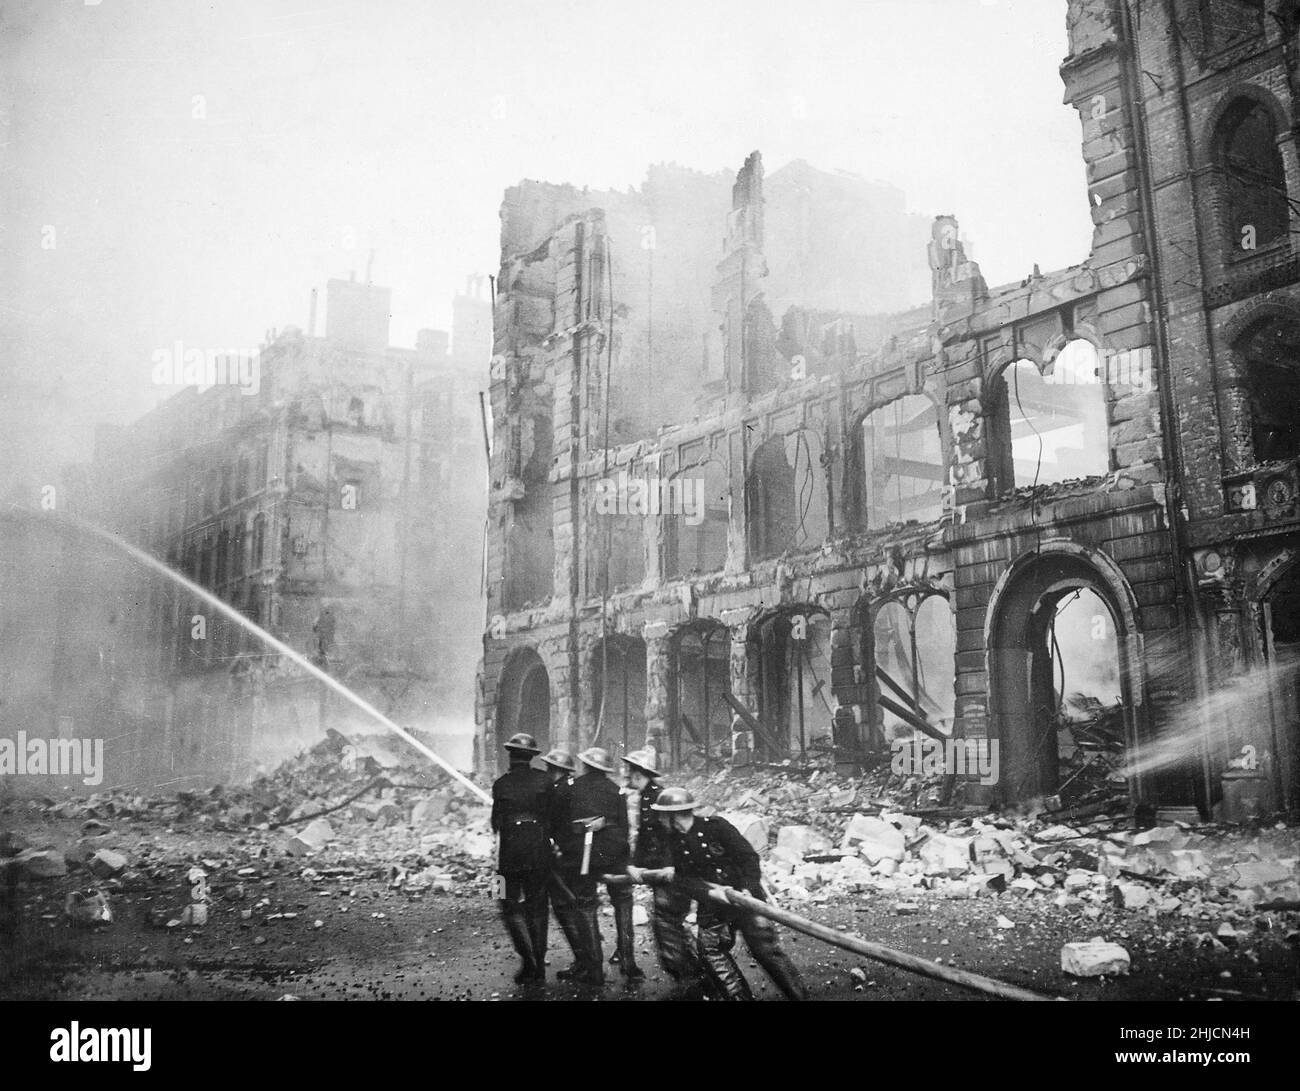 Vigili del fuoco al lavoro in una strada danneggiata dalla bomba a Londra dopo un raid Blitz di sabato sera, circa 1941. Il Blitz fu una campagna di bombardamento tedesca contro il Regno Unito nel 1940 e nel 1941, durante la seconda guerra mondiale. Il termine deriva da Blitzkrieg, che significa "guerra dei fulmini" in tedesco. Foto Stock